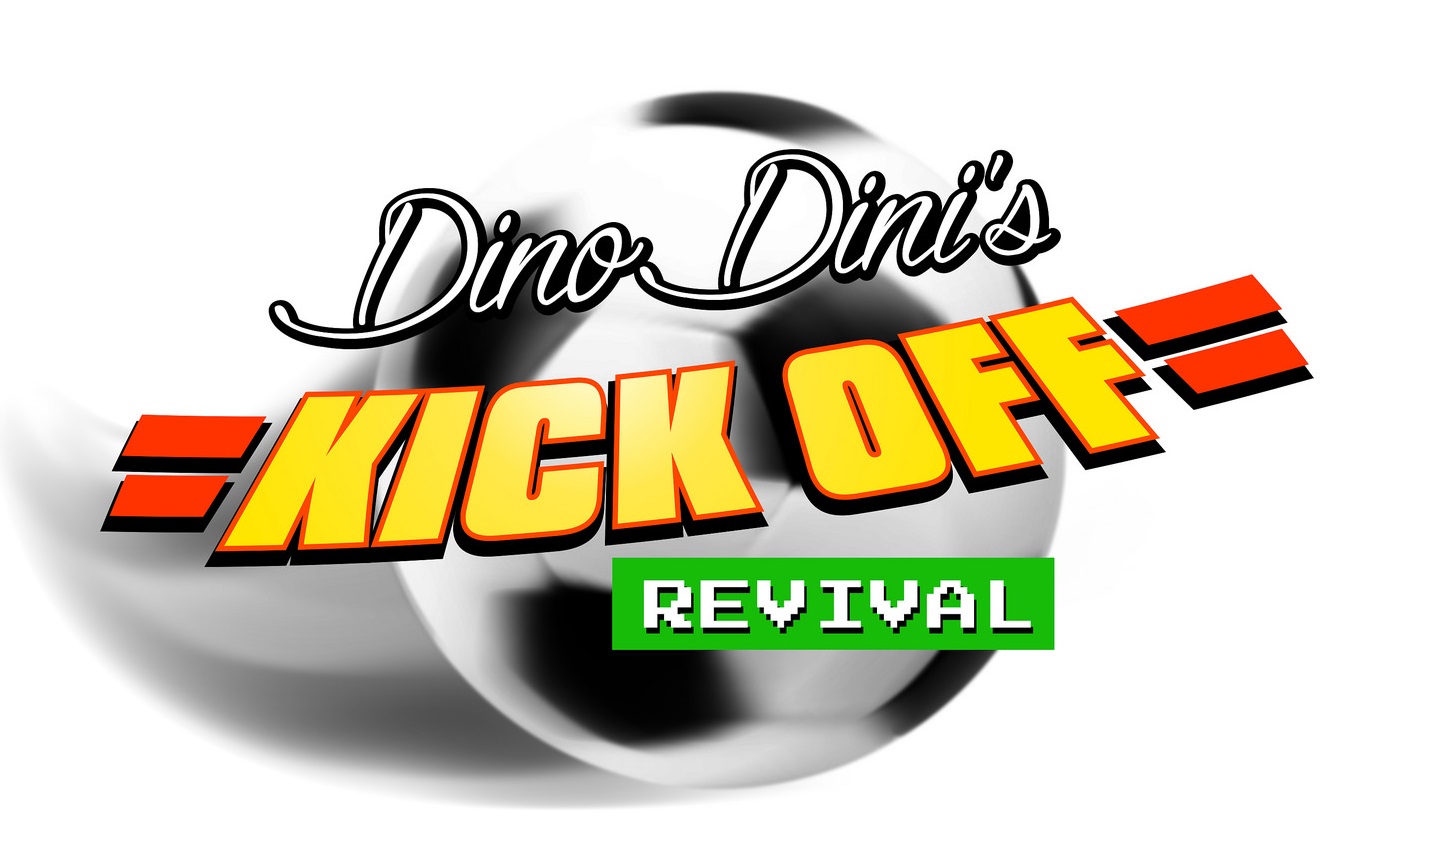 Dino Dini's Kick Off Revival